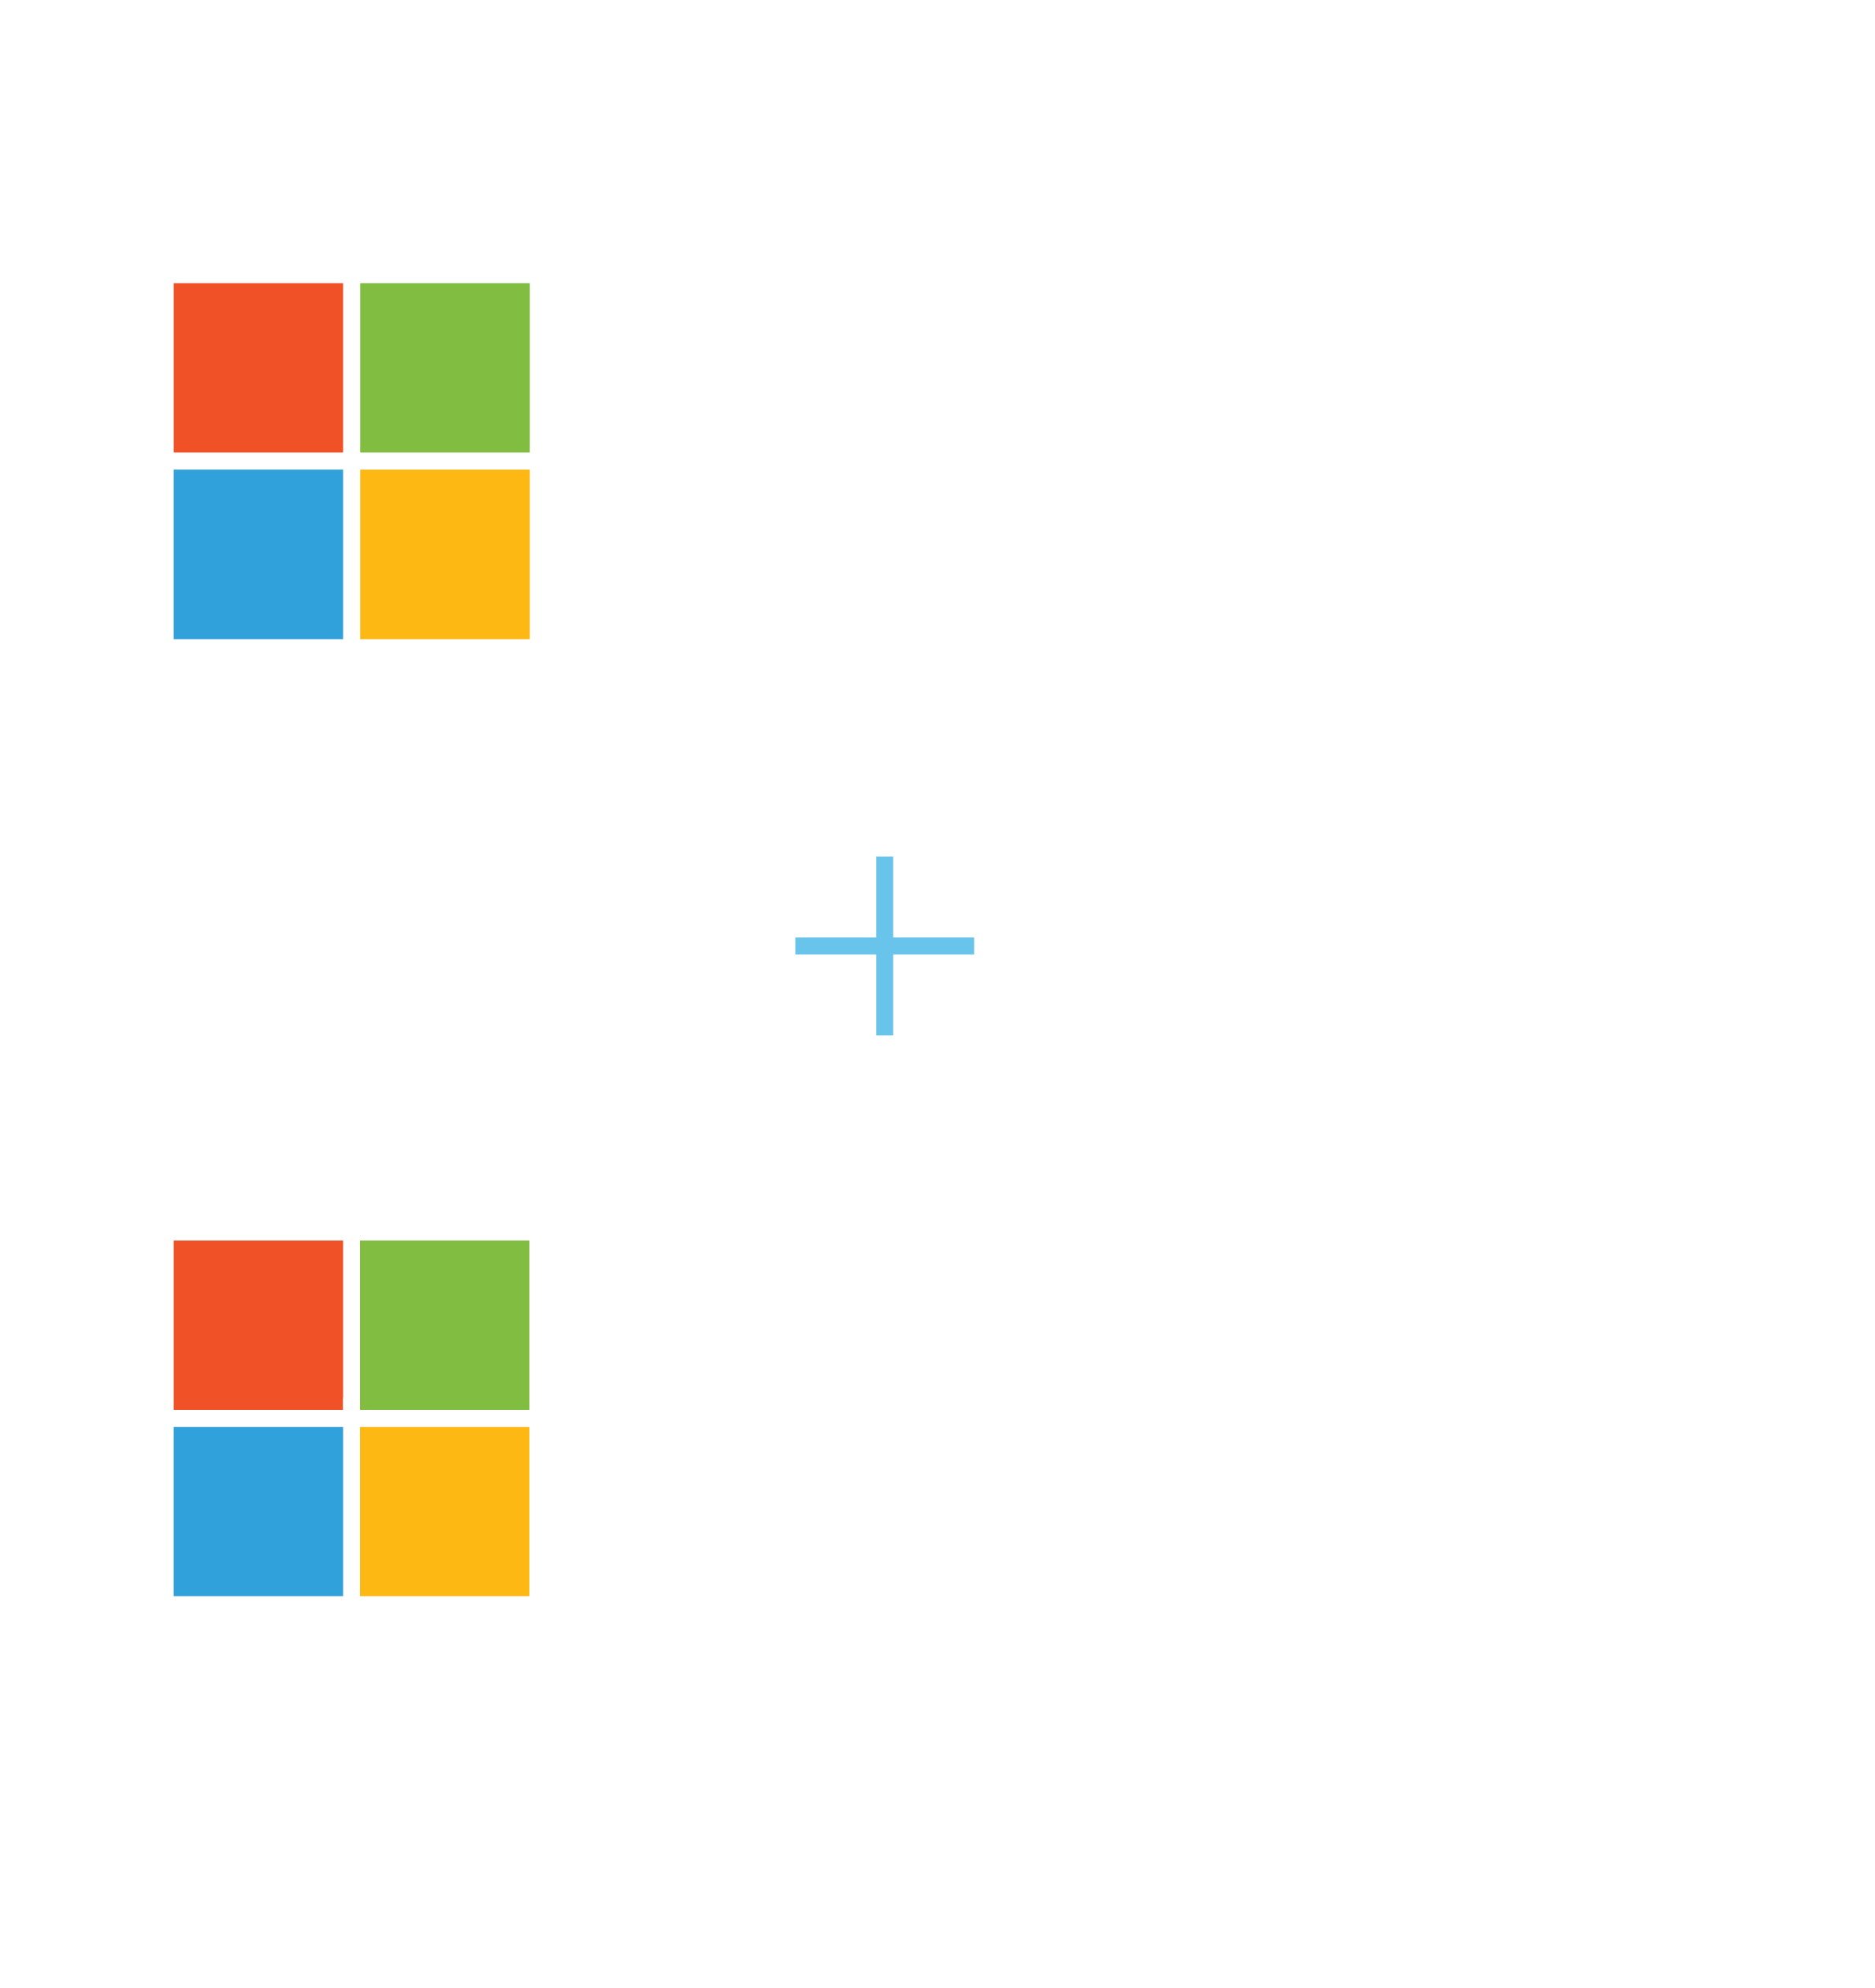 Microsoft Azure plus Microsoft Dynamics Logo